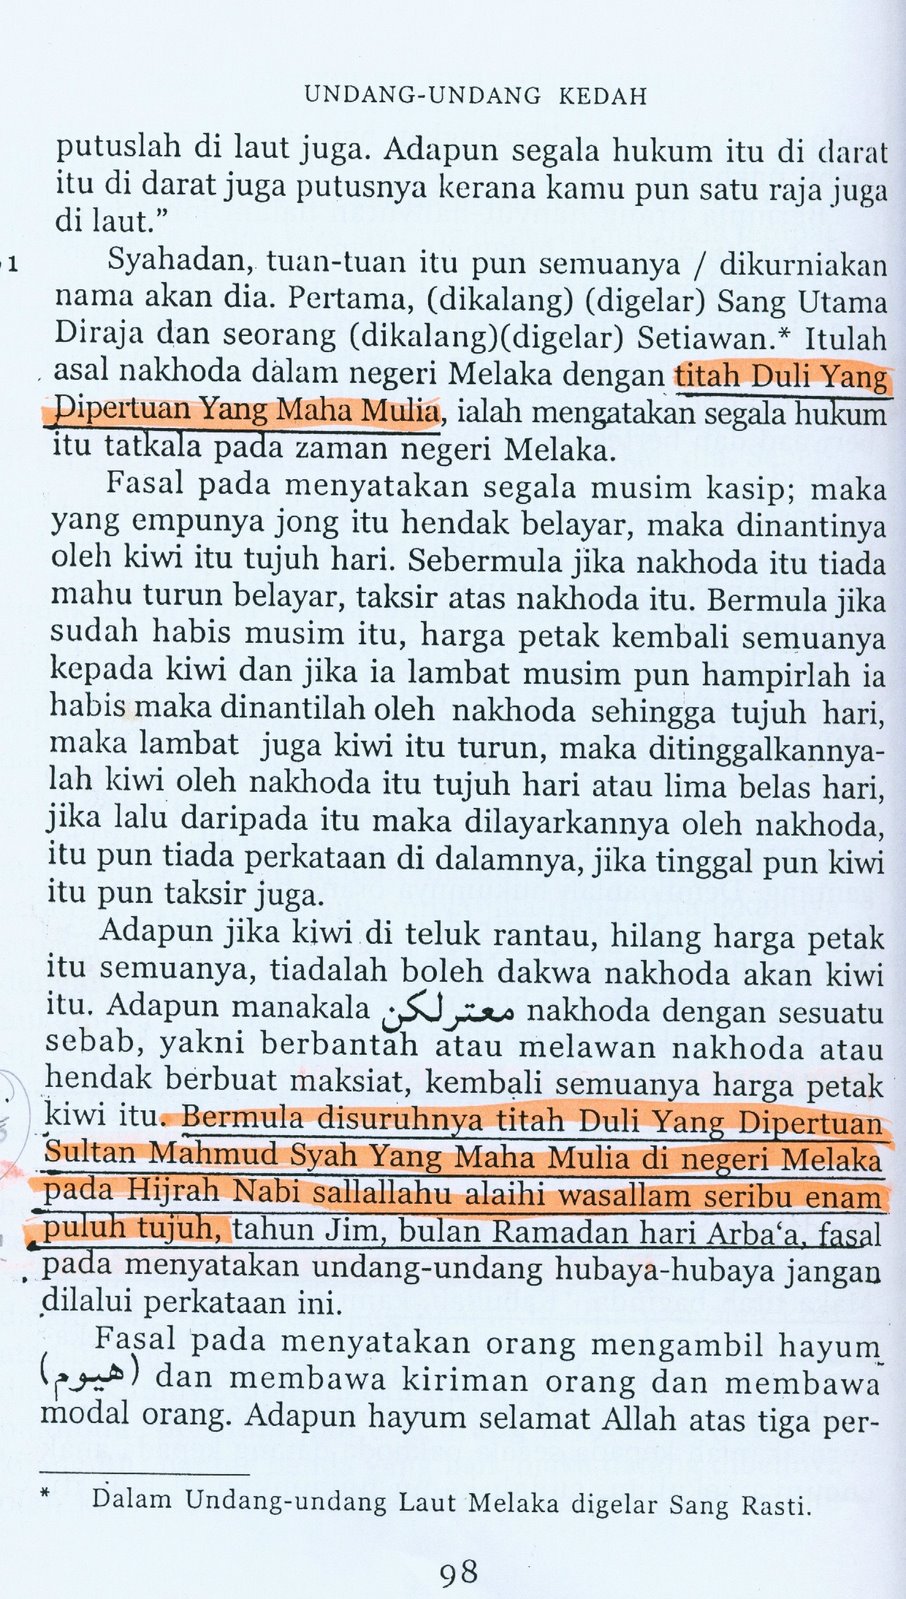 Undang-Undang Kedah ,ms98